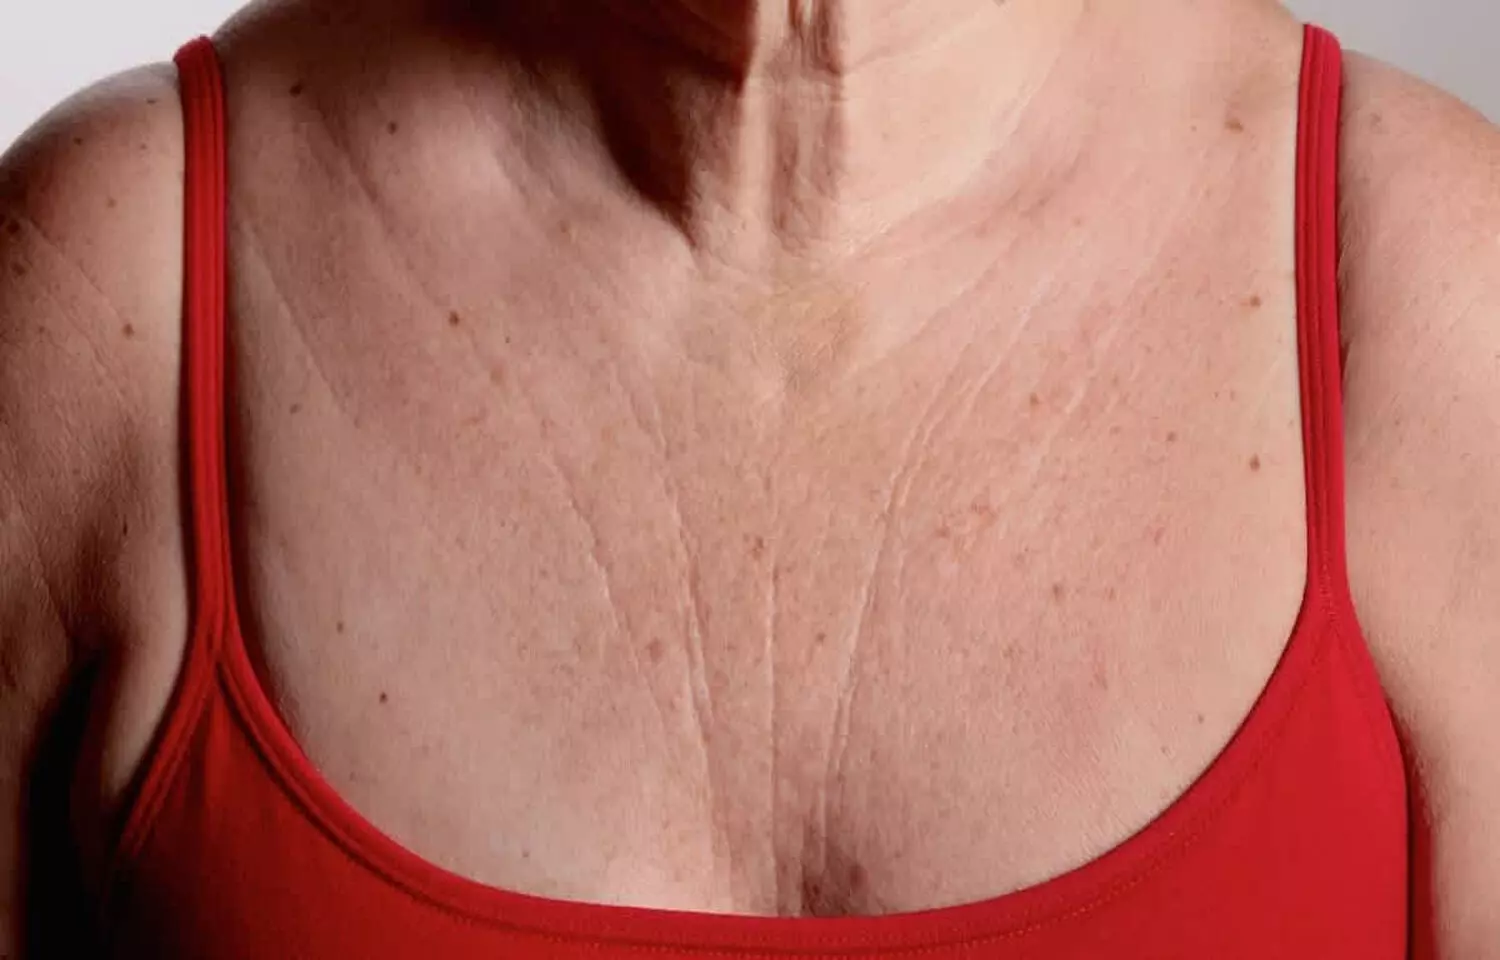 https://medicaldialogues.in/h-upload/2021/05/04/151867-chest-wrinkle.webp